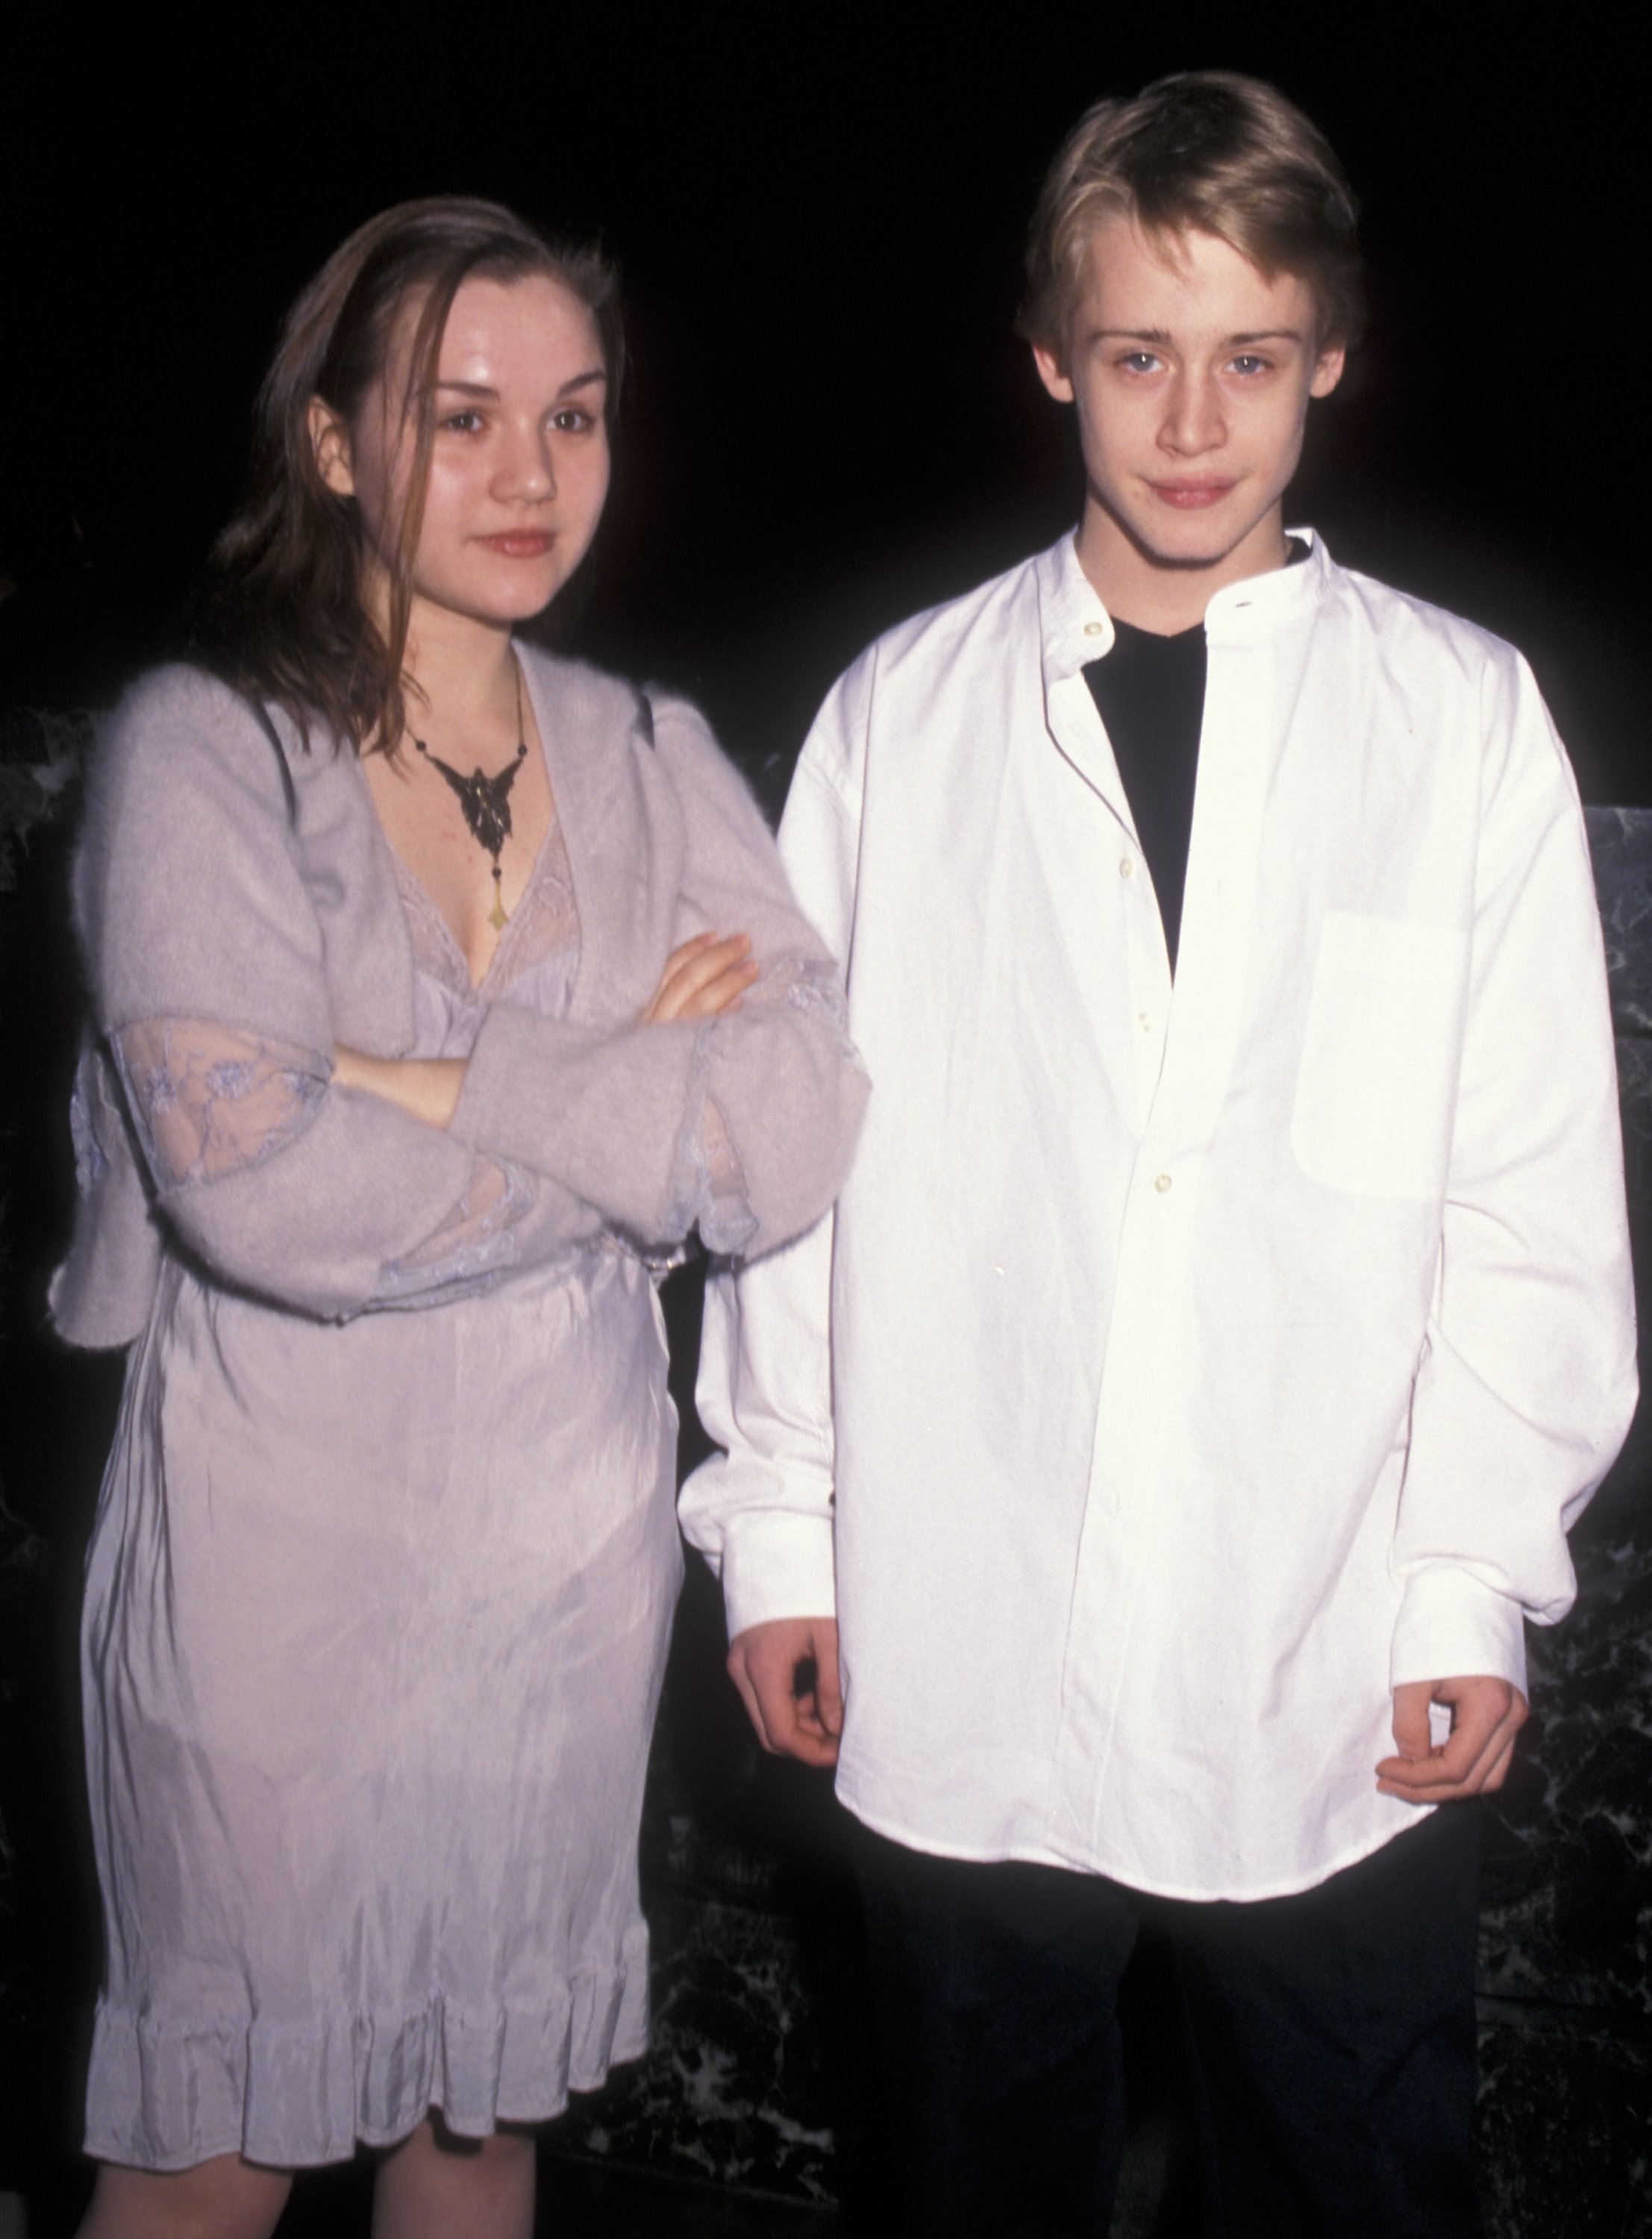 Rachel Miner y Macaulay Culkin en la fiesta de proyección de "Gia", el 28 de enero de 1998 en el Equitable Center de Nueva York. | Foto: Getty Images